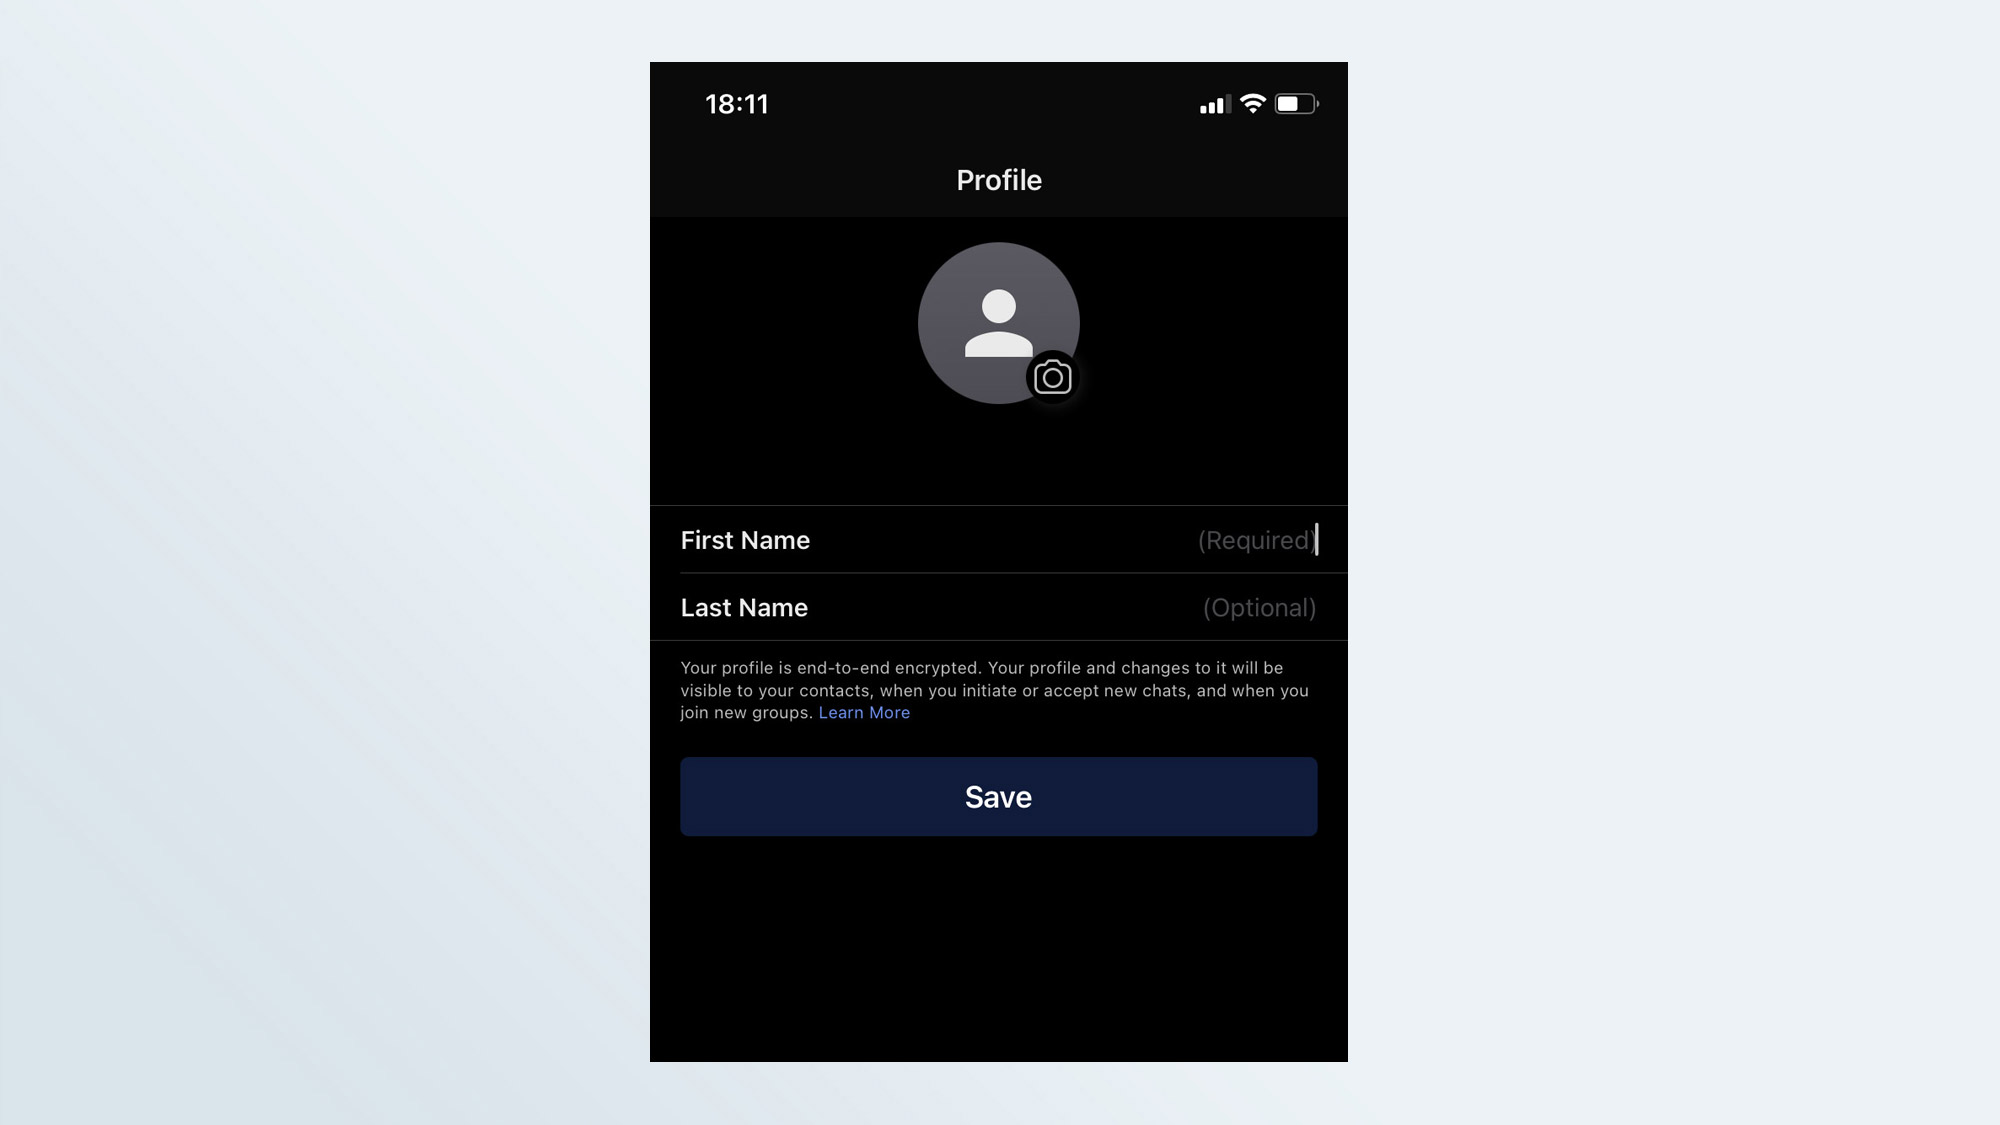 Снимок экрана страницы ввода имени, используемой при создании учетной записи в приложении iOS Signal.